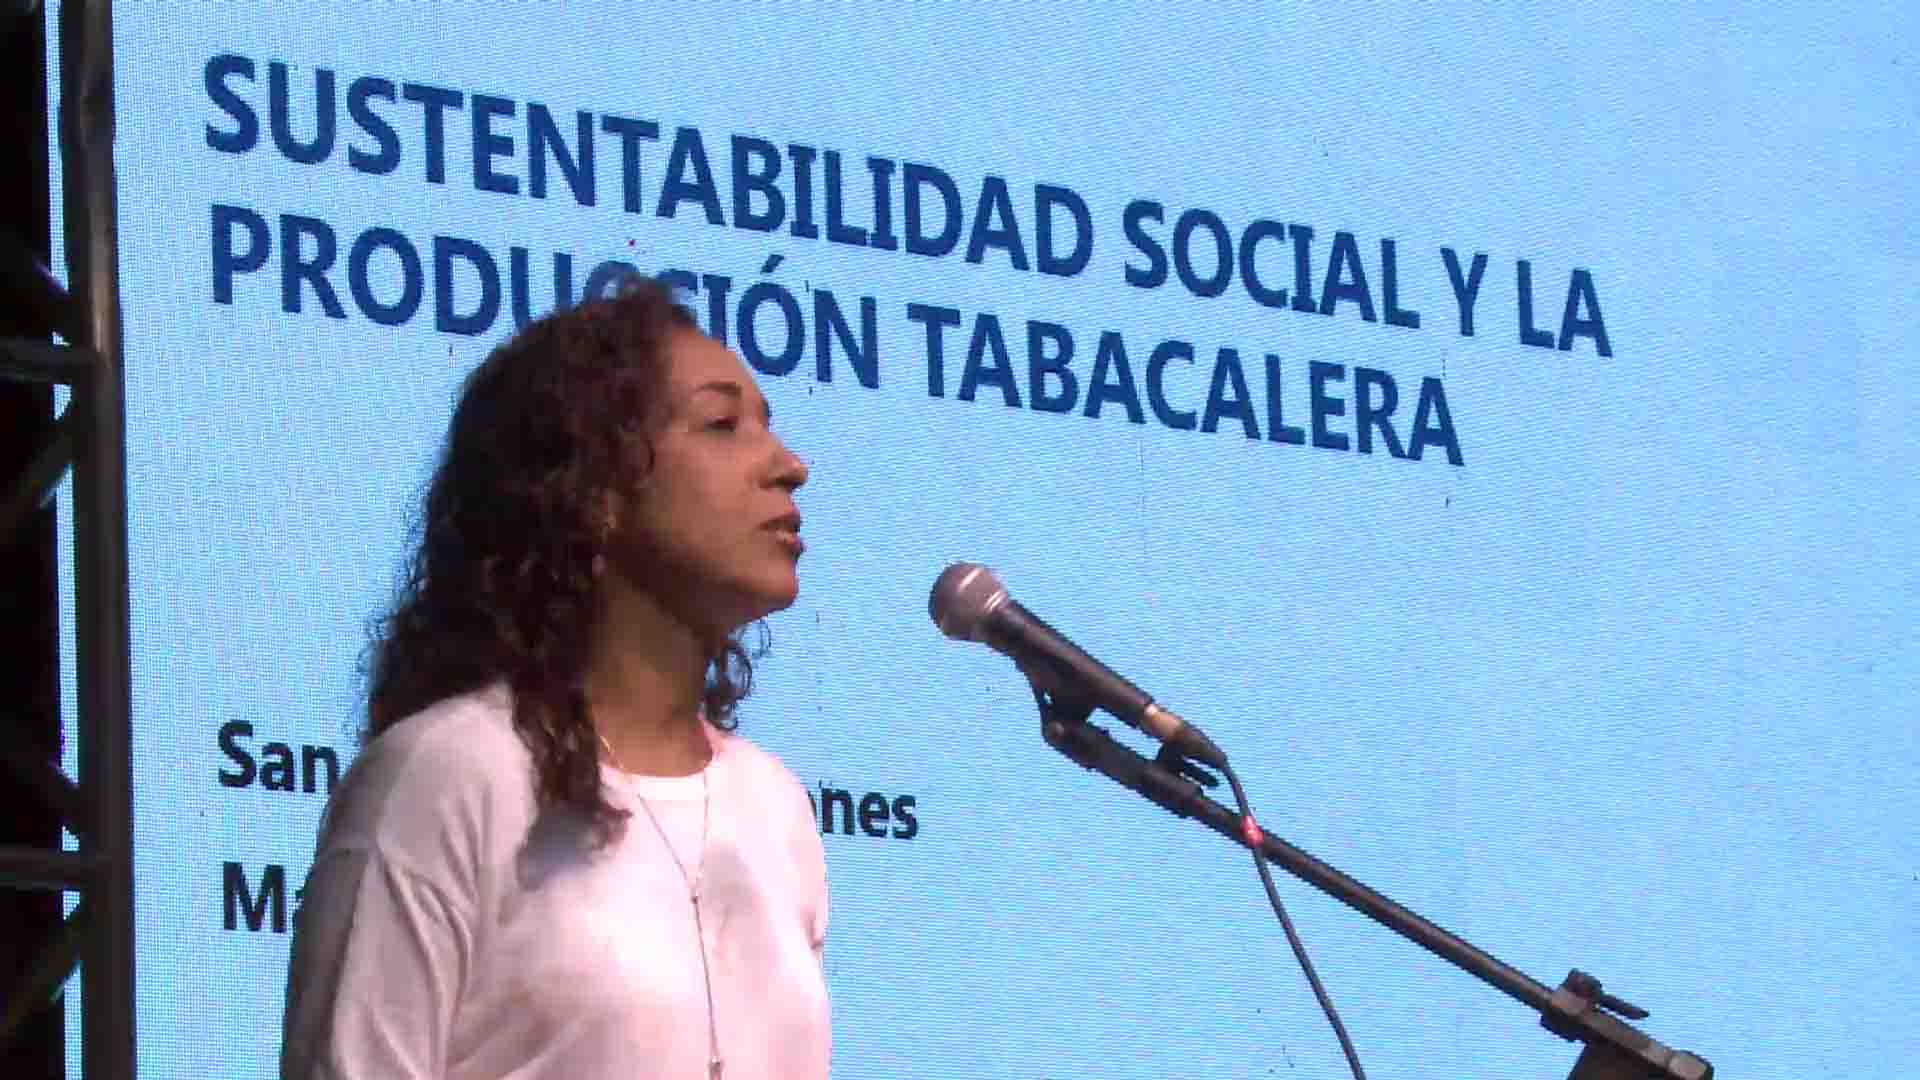 San Vicente: tabacaleros en favor de una producción sustentable